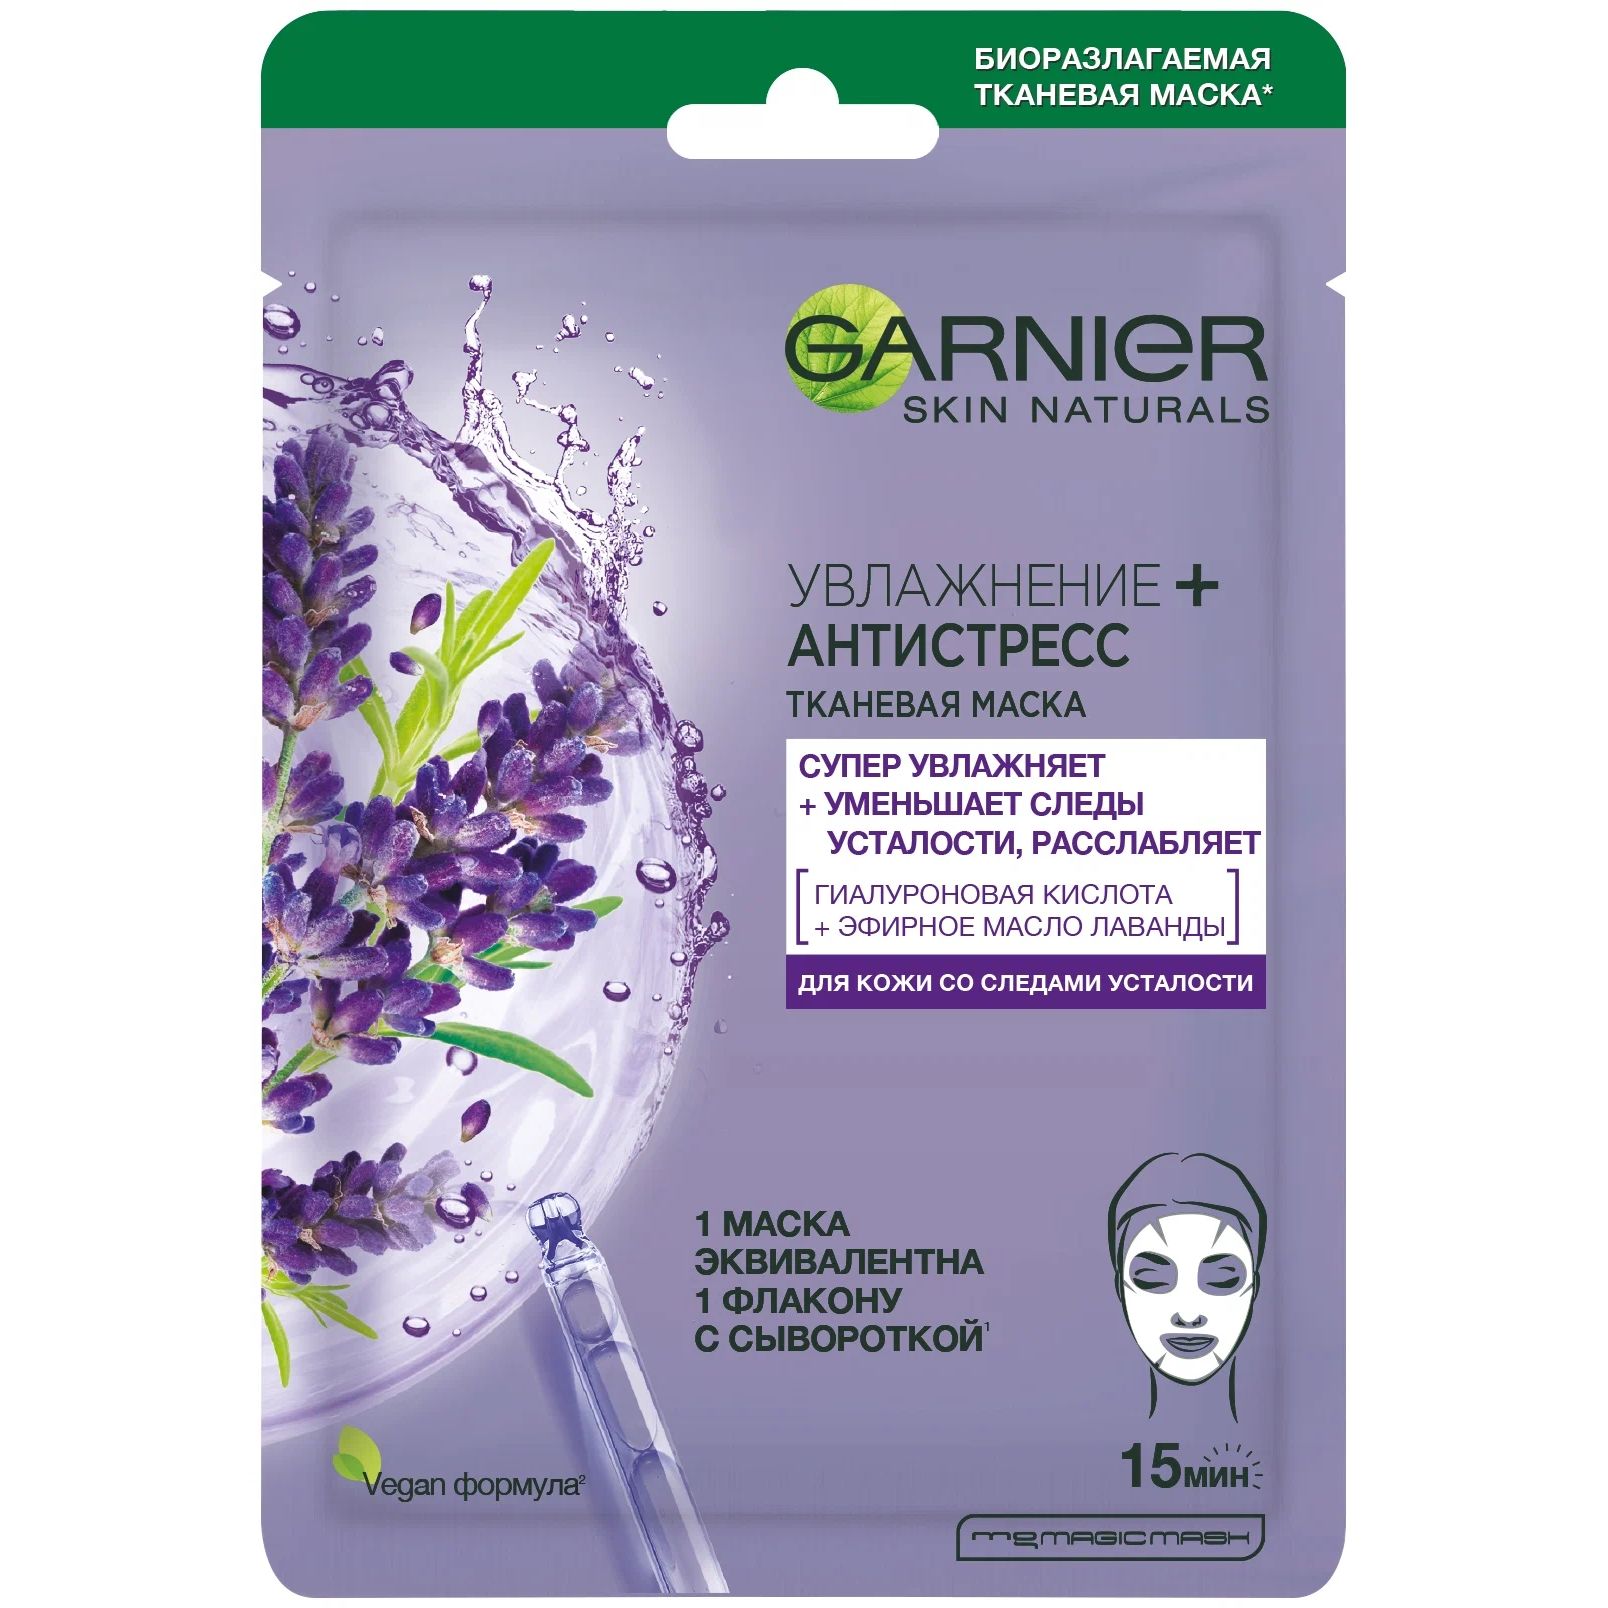 Маска для лица Garnier Увлажнение + Антистресс 32 г esfolio маска для лица с экстрактом лаванды 25 0